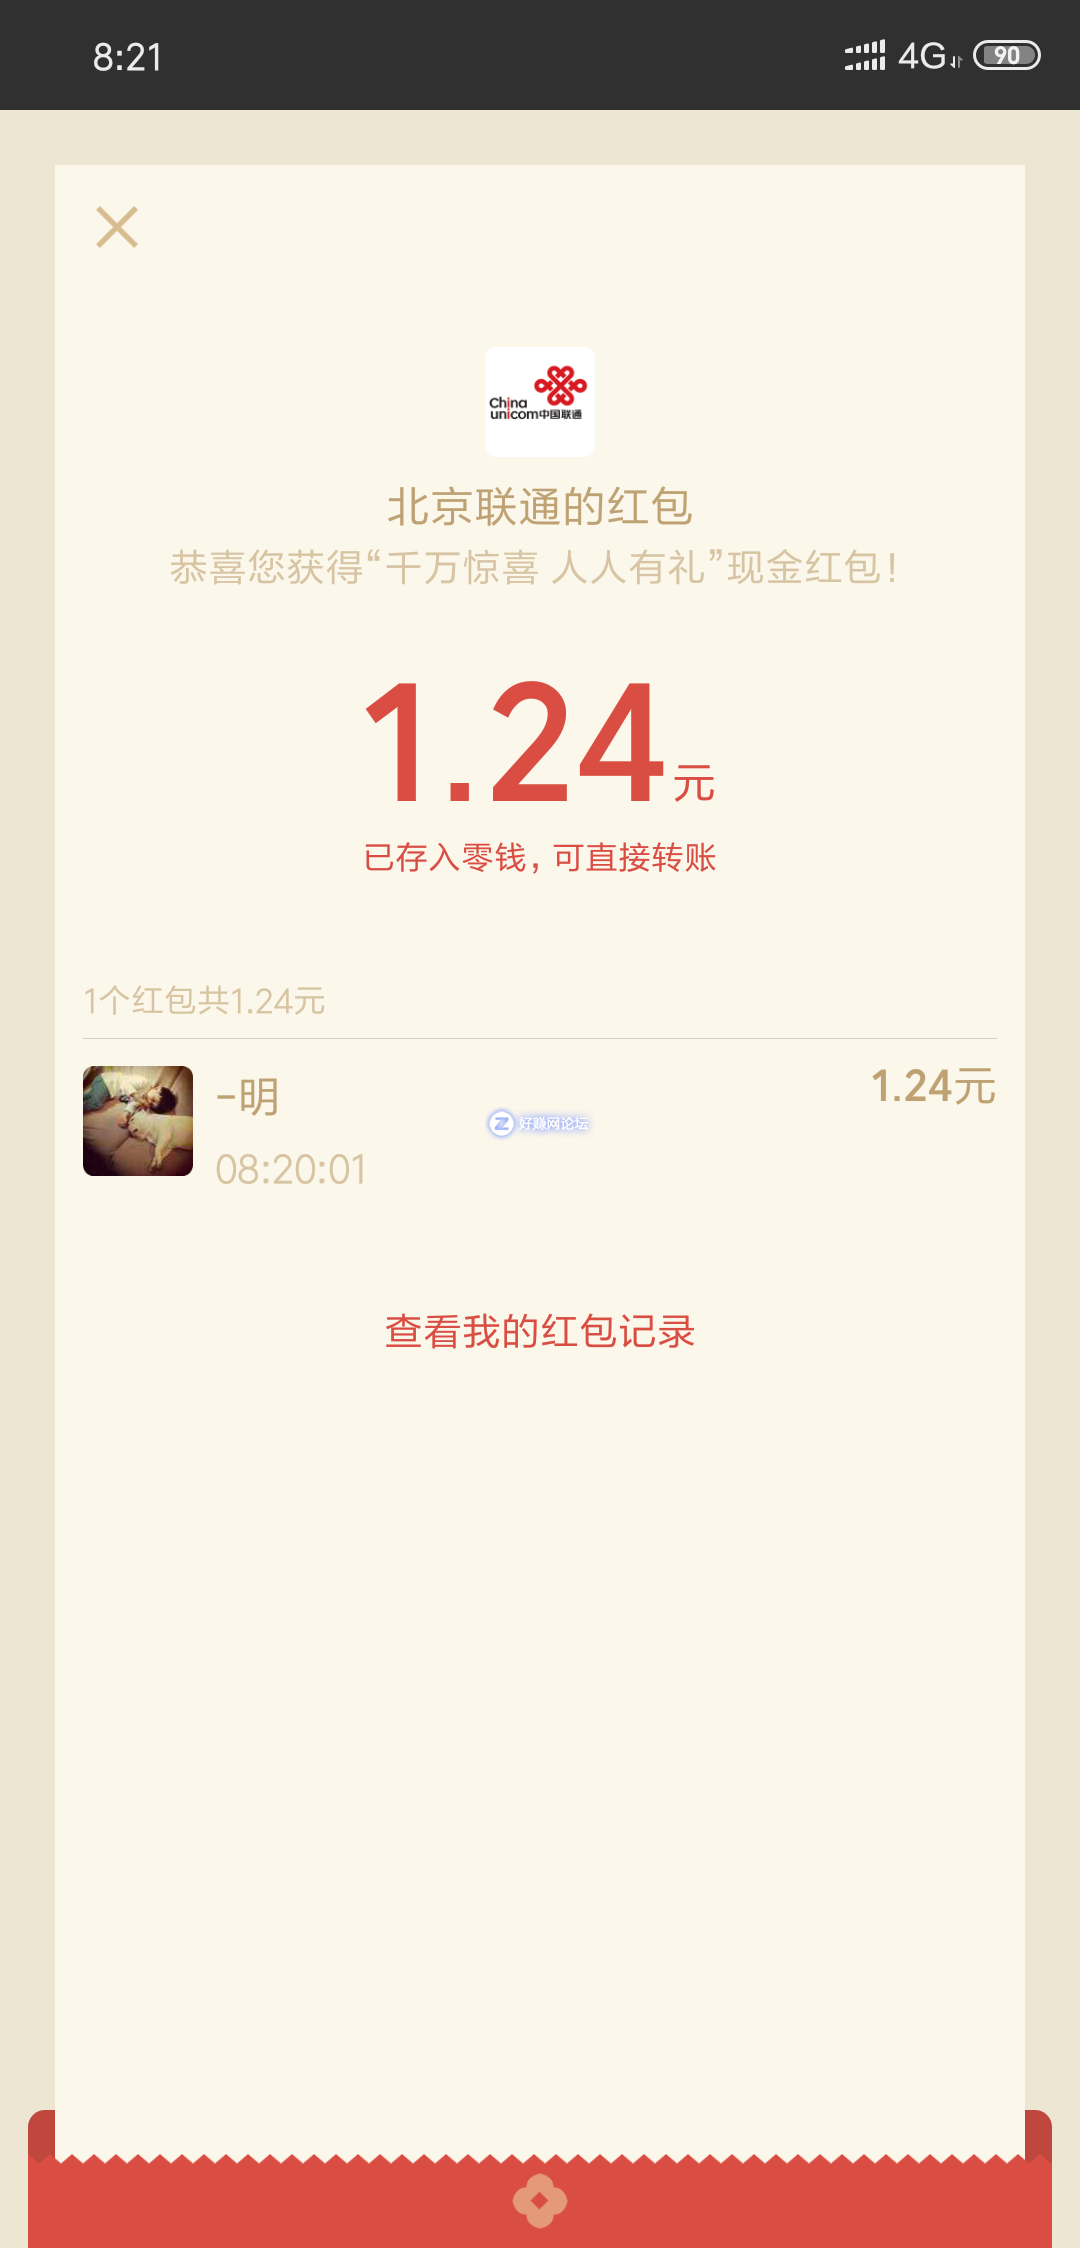 Screenshot_2018-11-23-08-21-38-200_com.tencent.mm.png